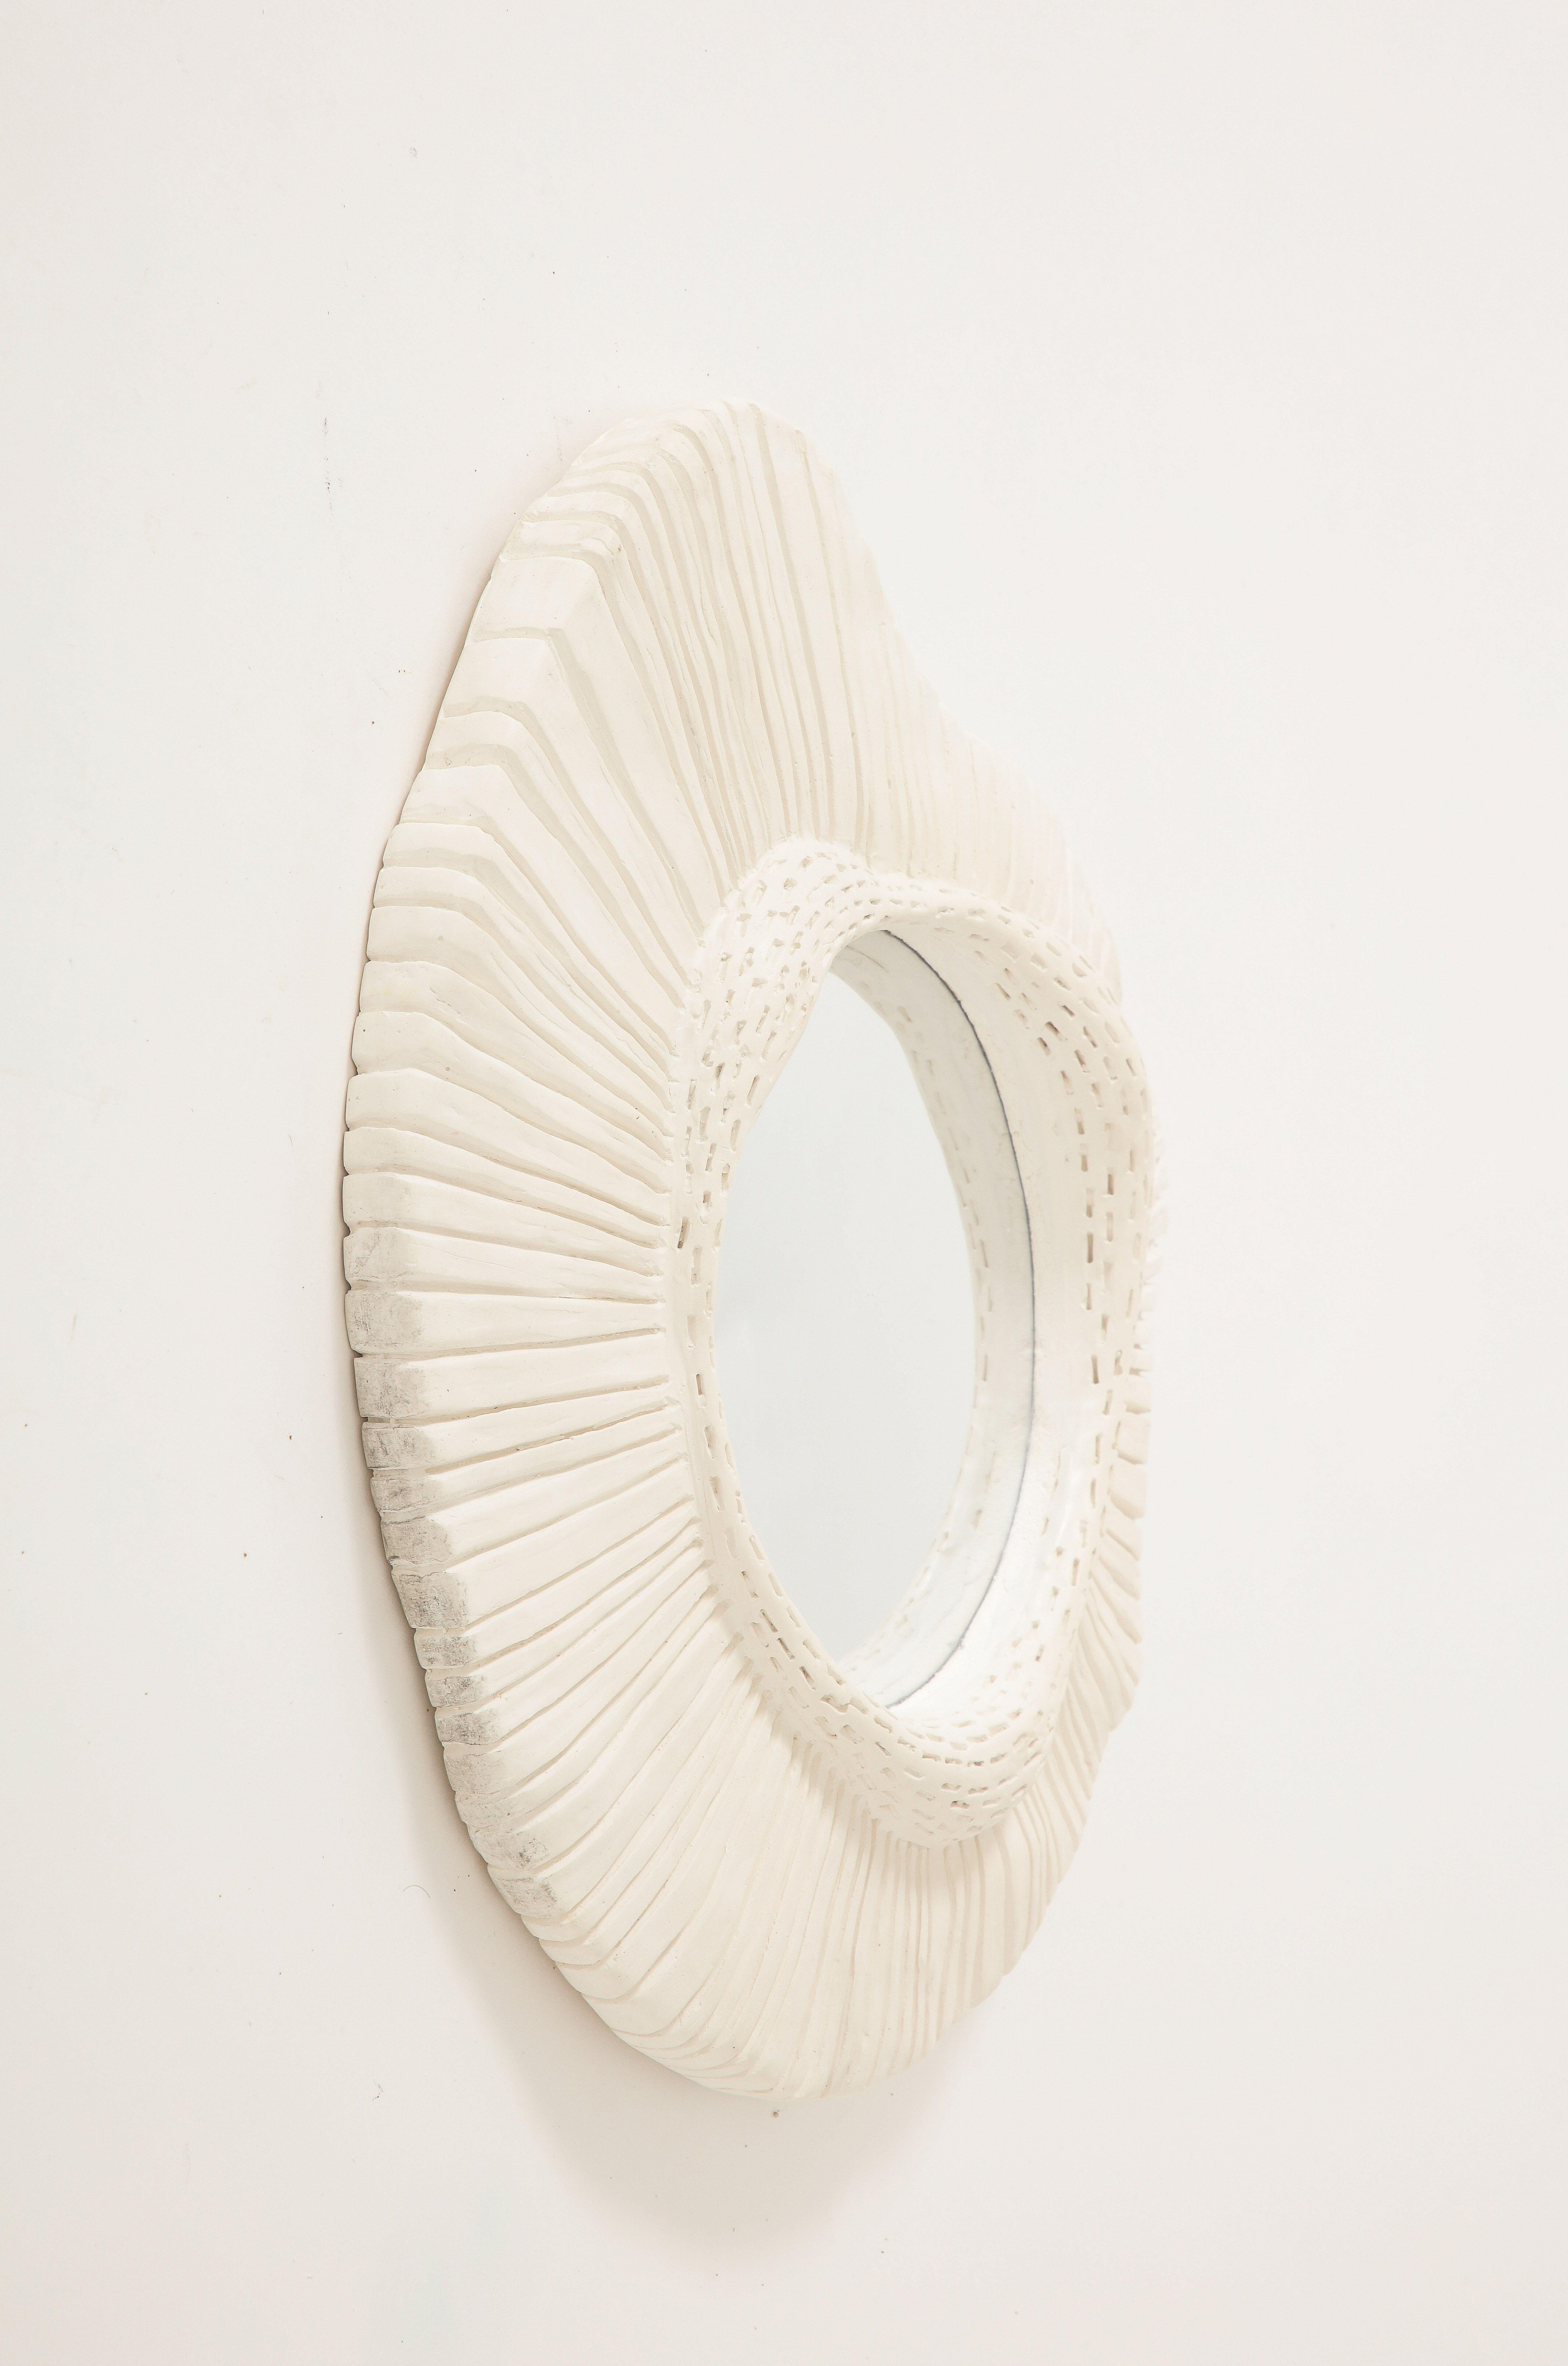 Faisant partie d'une série de notre inventaire, ce miroir en plâtre sculpté avec verre convexe est éblouissant seul ou dans le cadre d'une collection. Sa forme asymétrique et sa texture intéressante en font une pièce unique, adaptée à un